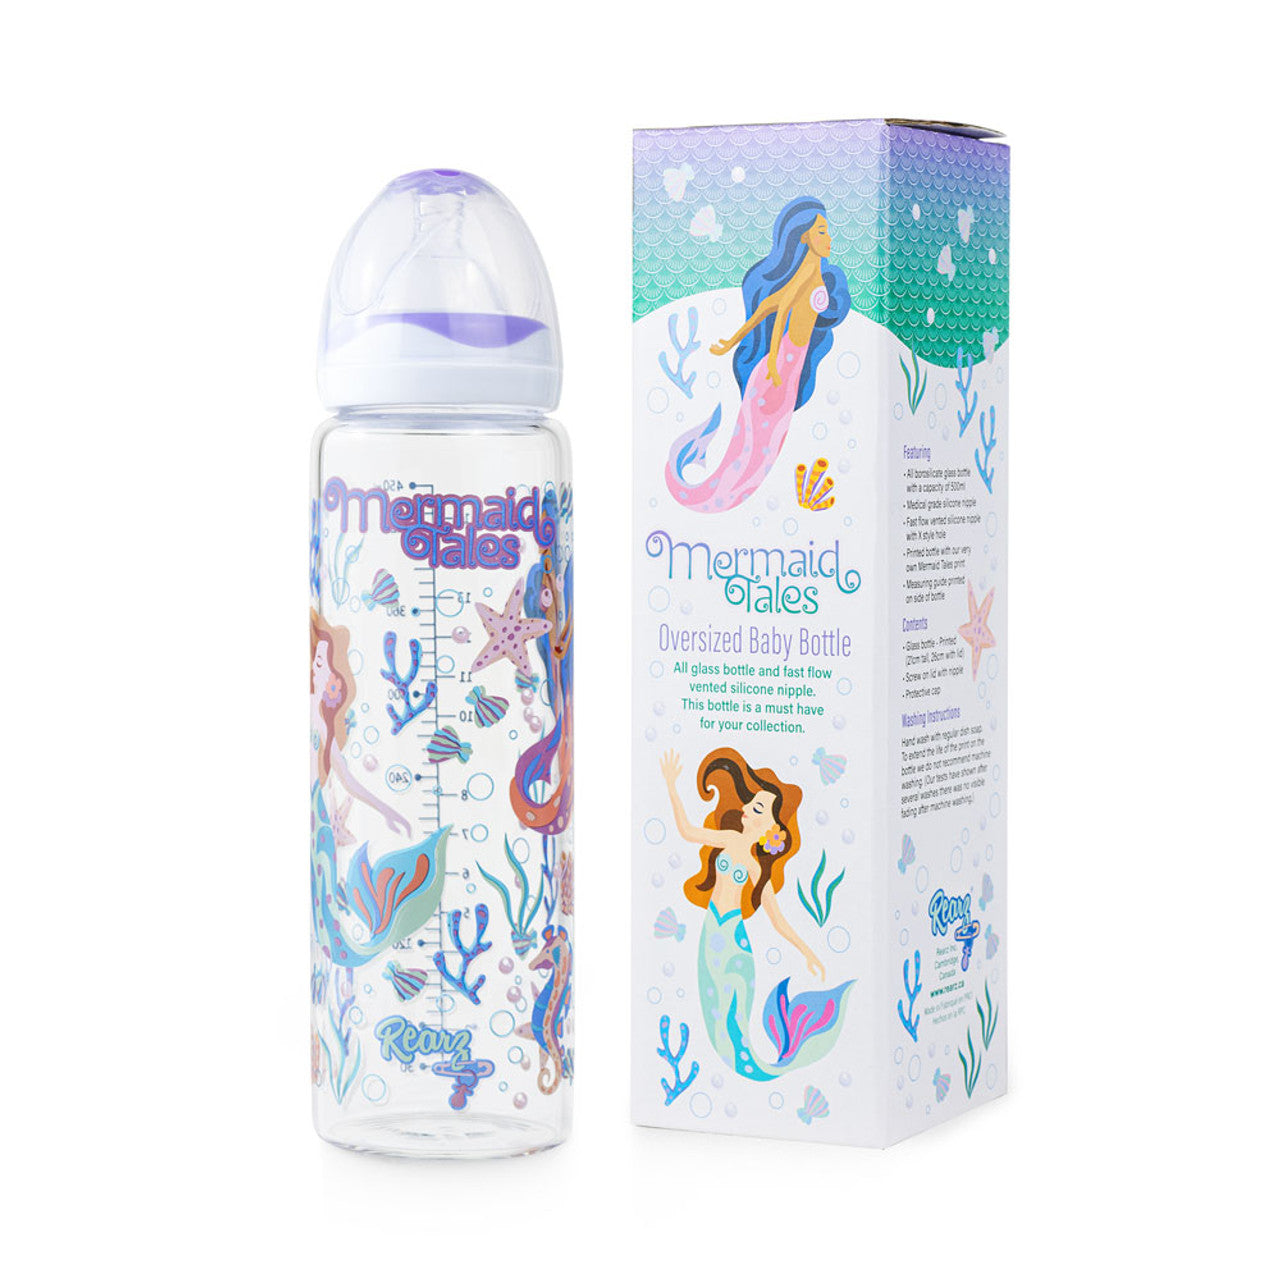 Rearz - Adult Baby Bottle - Mermaid Tales